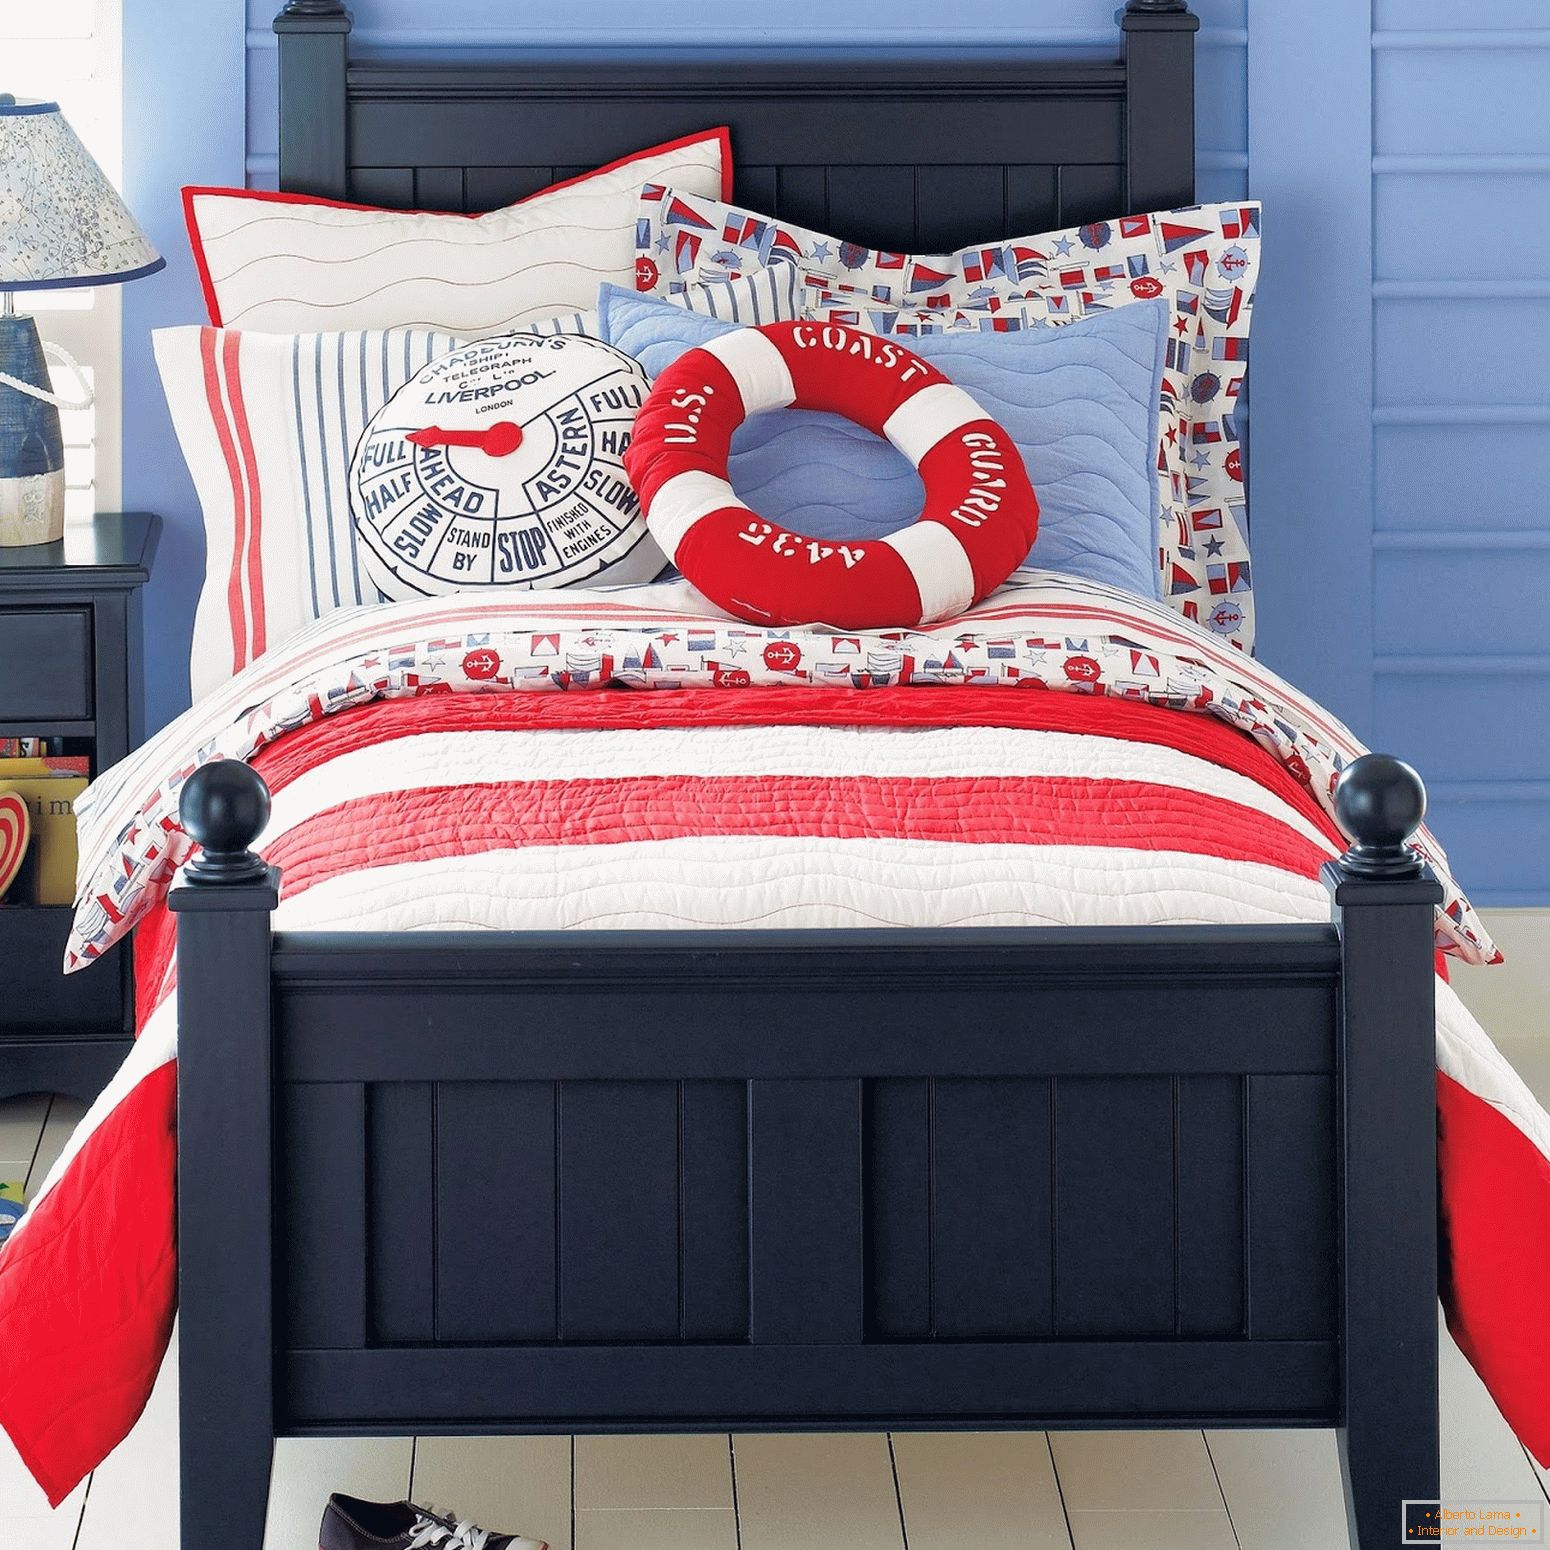 Ein Bett für einen Seemannsjungen